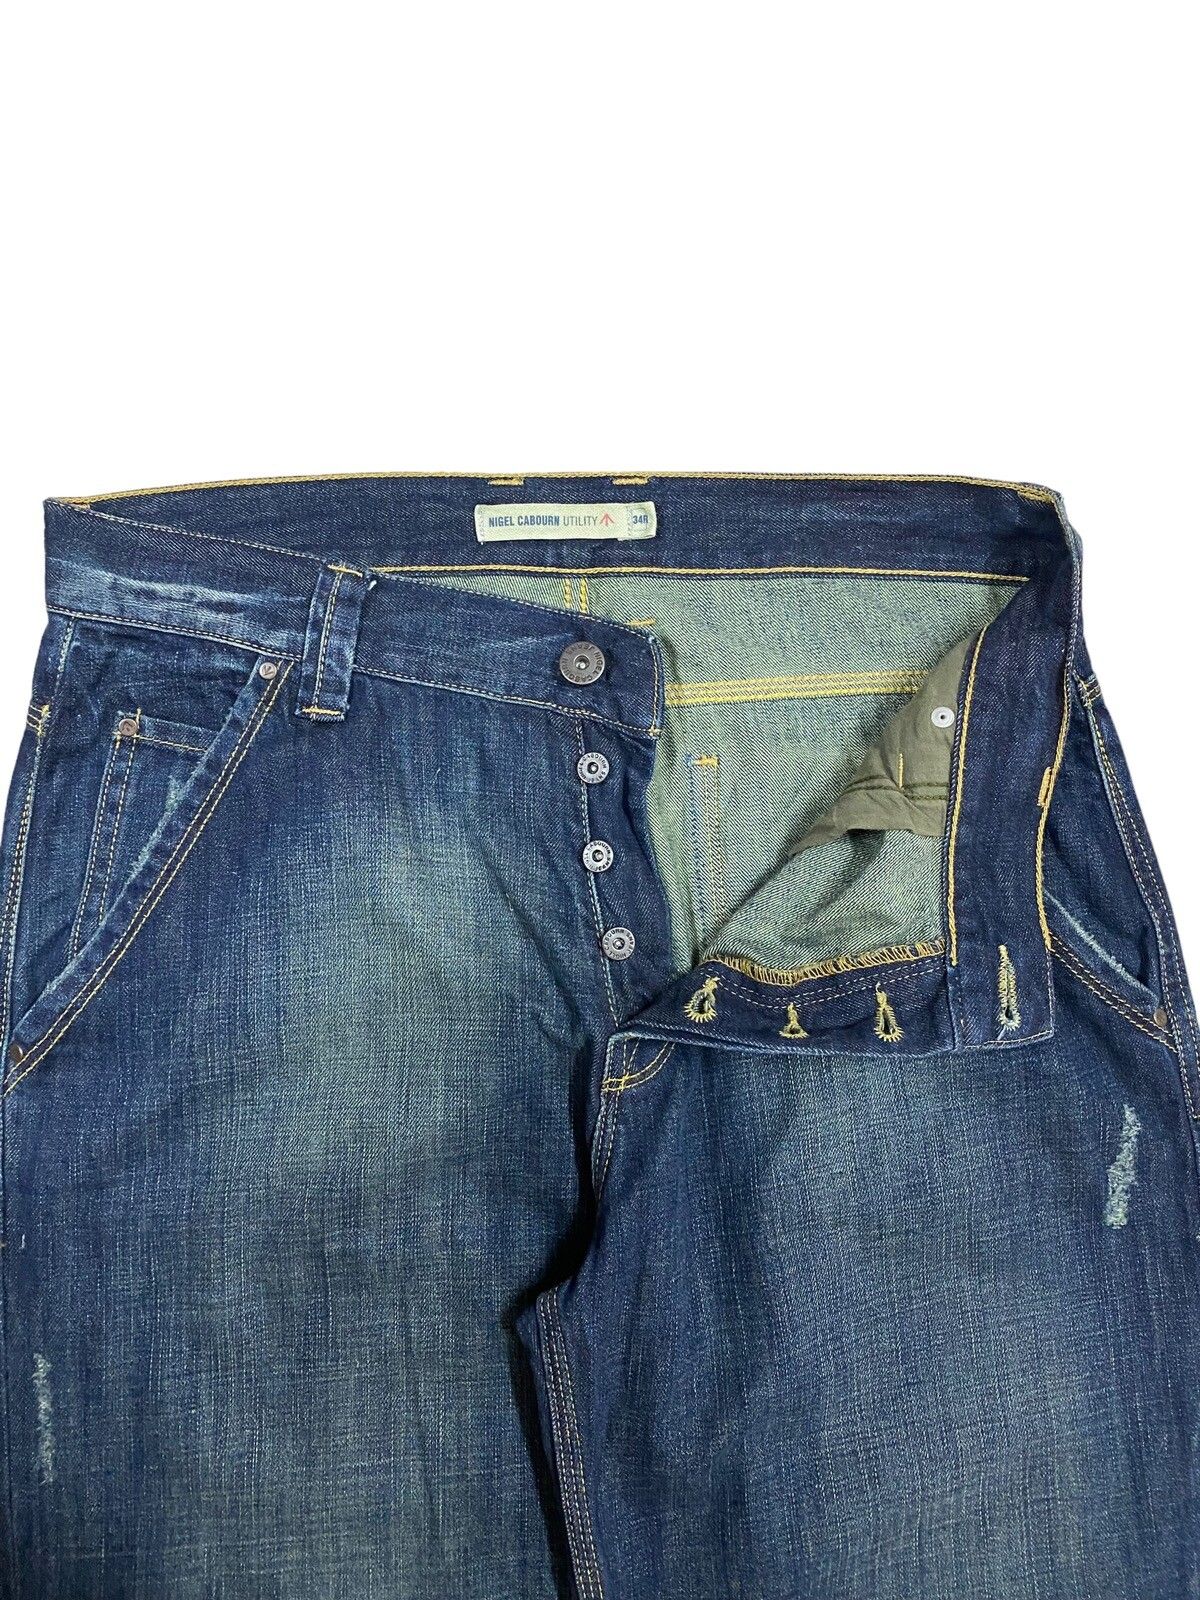 Vtg🔥Nigel Carbourn Utility Dark Blue Wash Jeans - 10